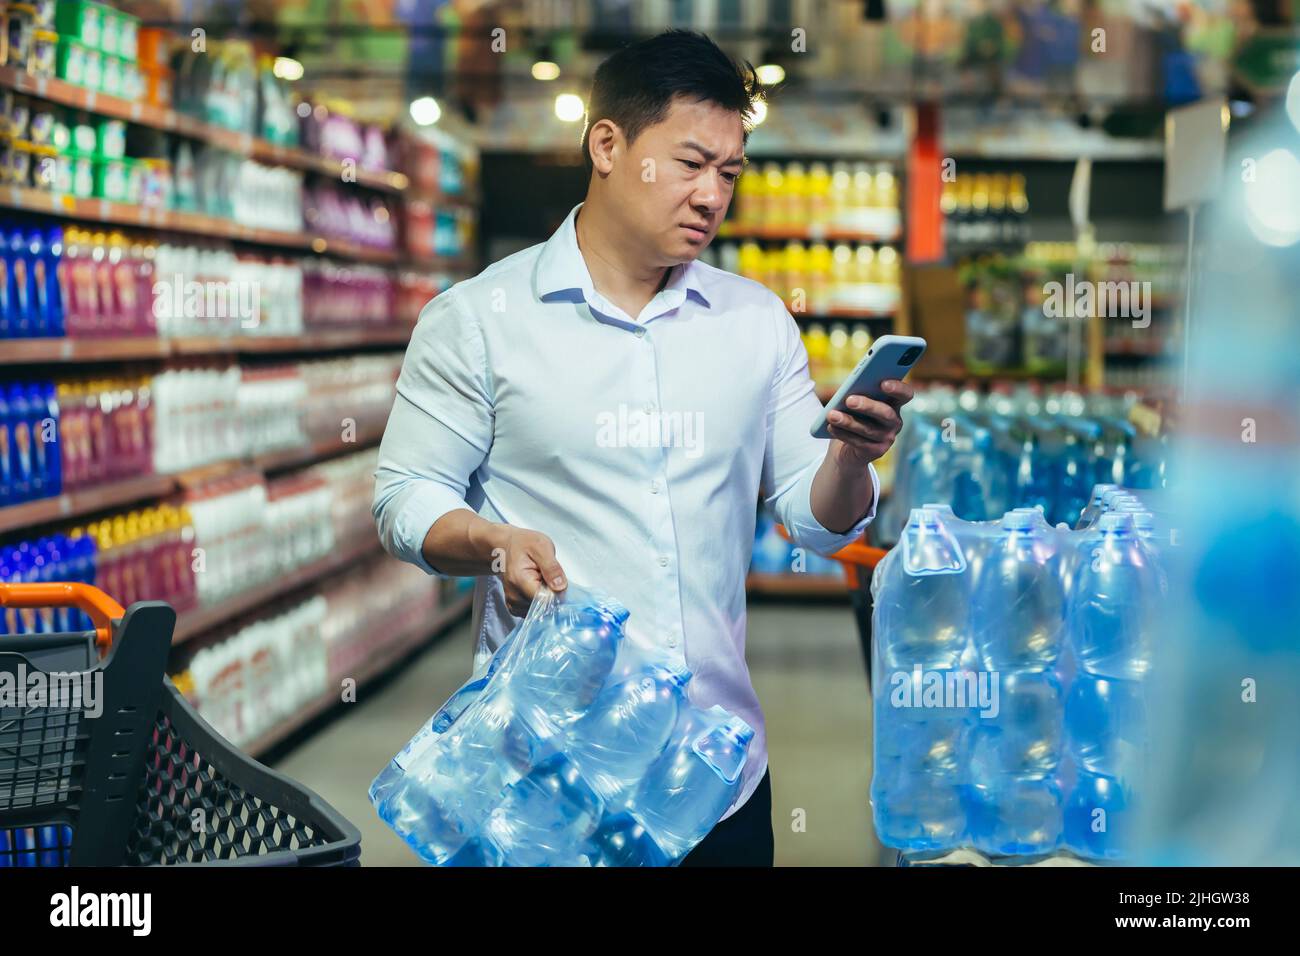 Crisi alimentare, carenza di acqua potabile, uomo asiatico in supermercato acquistare acqua in bottiglia, nervoso e triste lettura cattive notizie al telefono Foto Stock